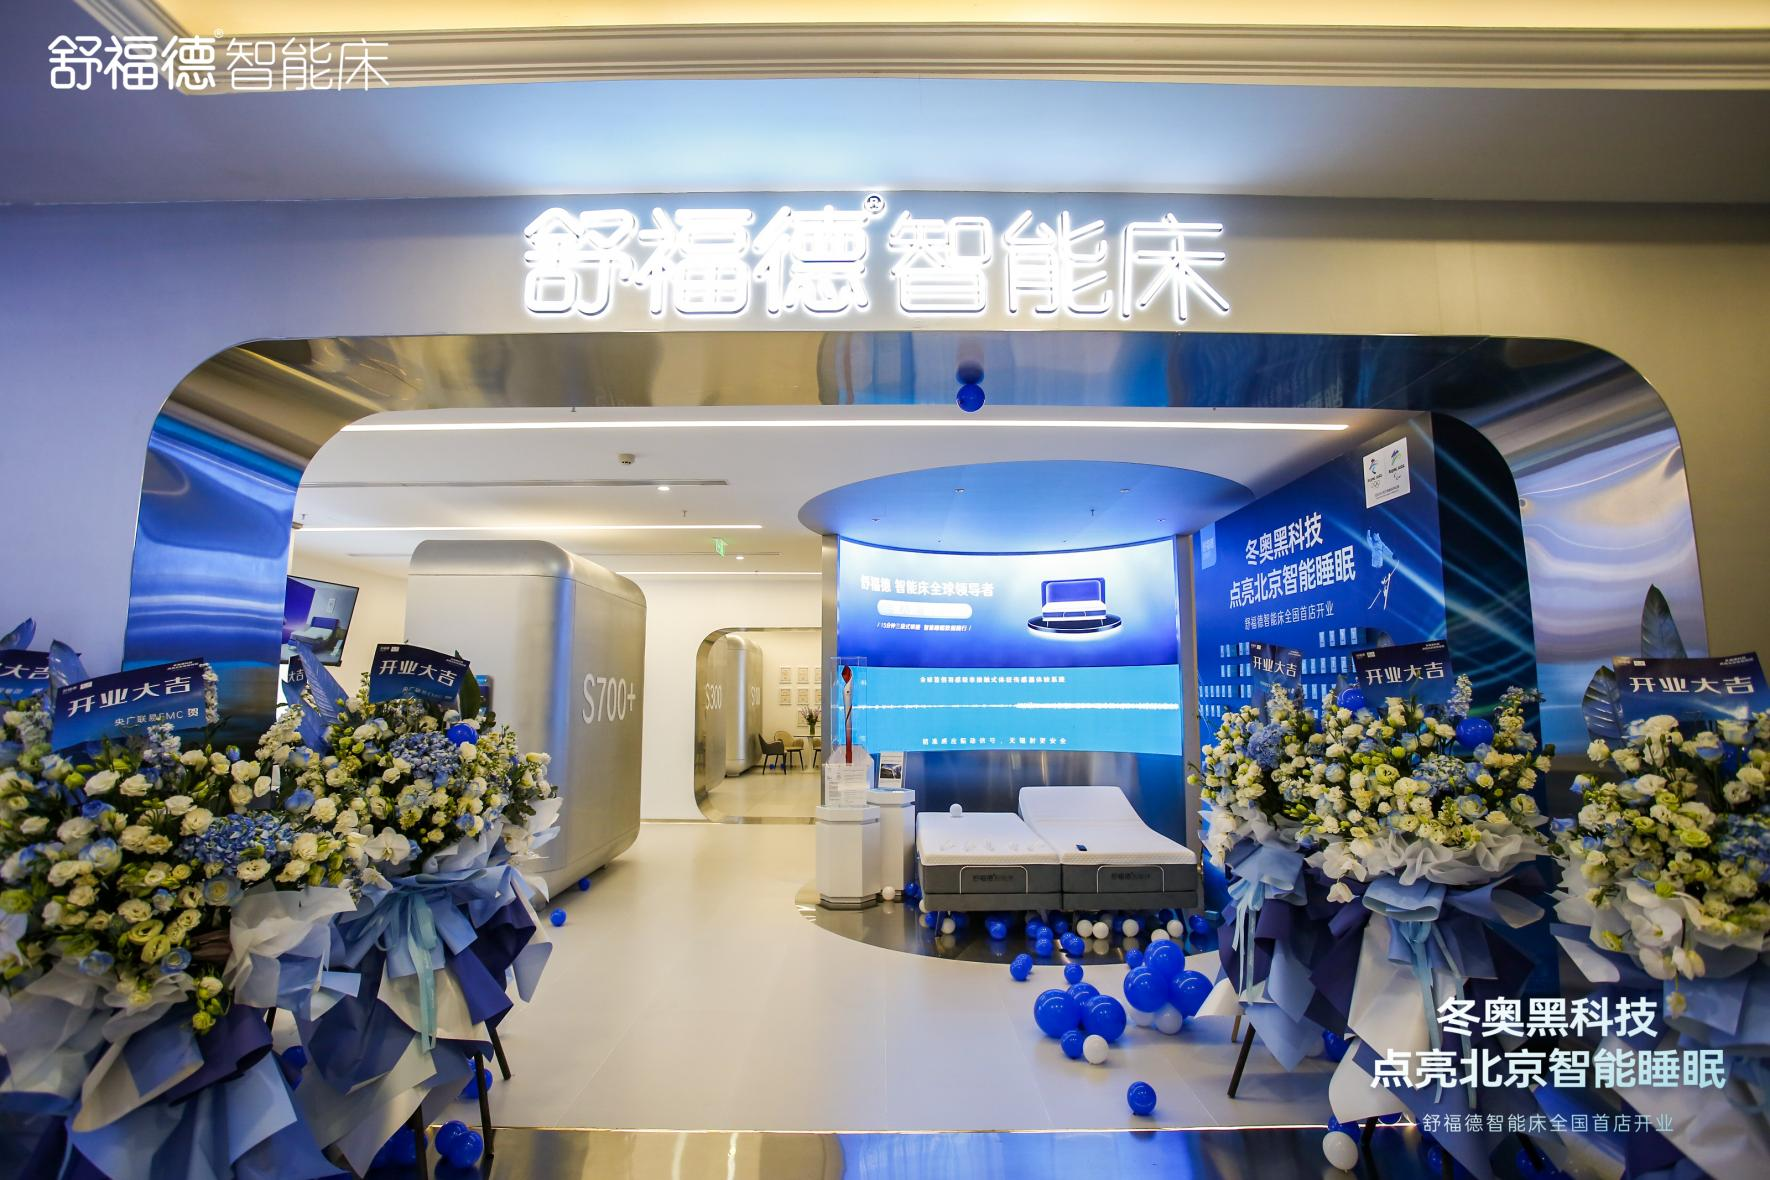 4月19日开业的舒福德智能床全国首店通过一套优秀的组合拳，成功掀起了北京及周边地区的“一键入眠”热潮。